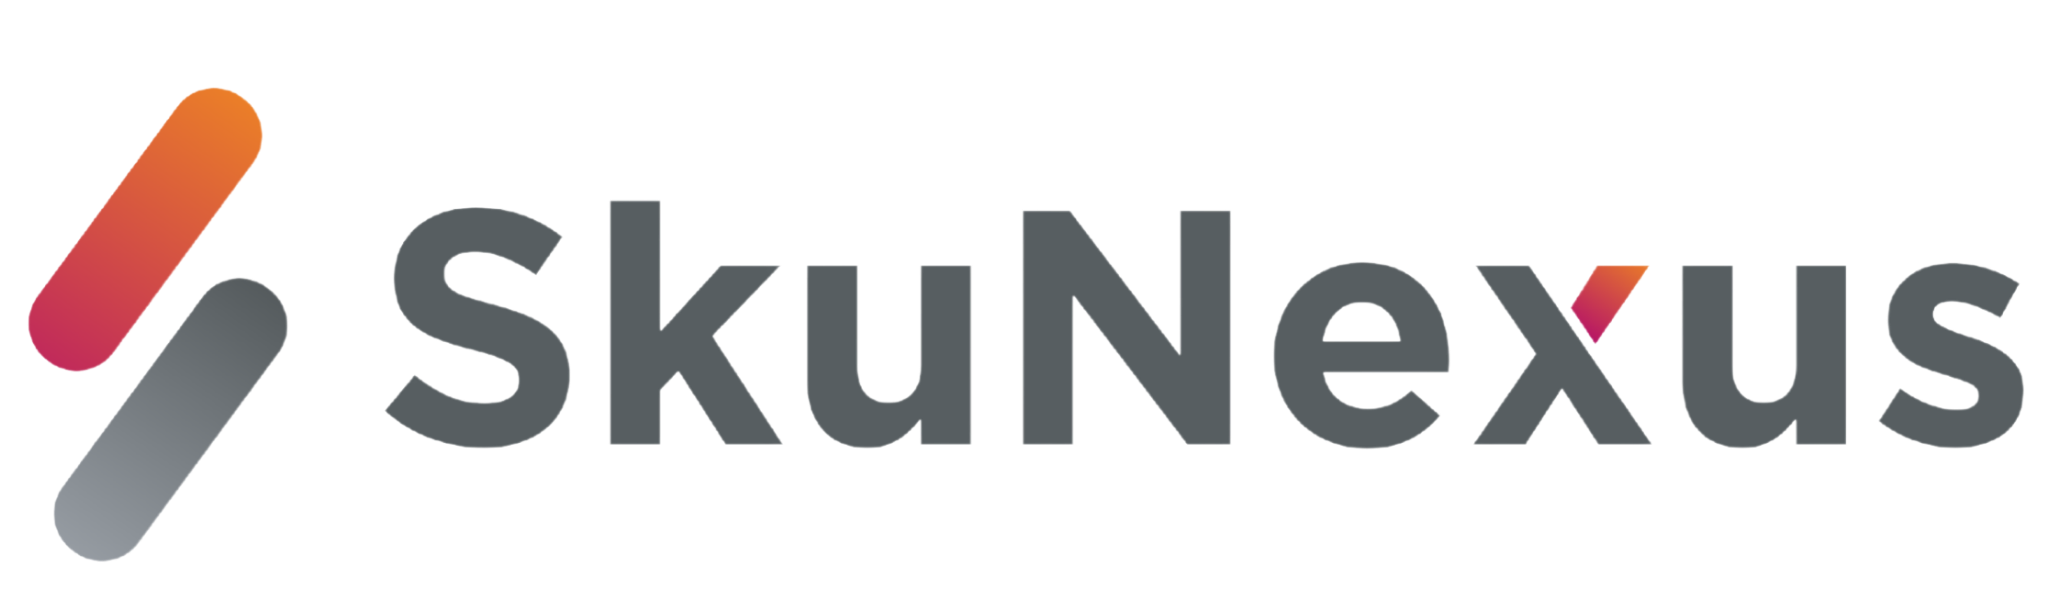 SkuNexus Logo